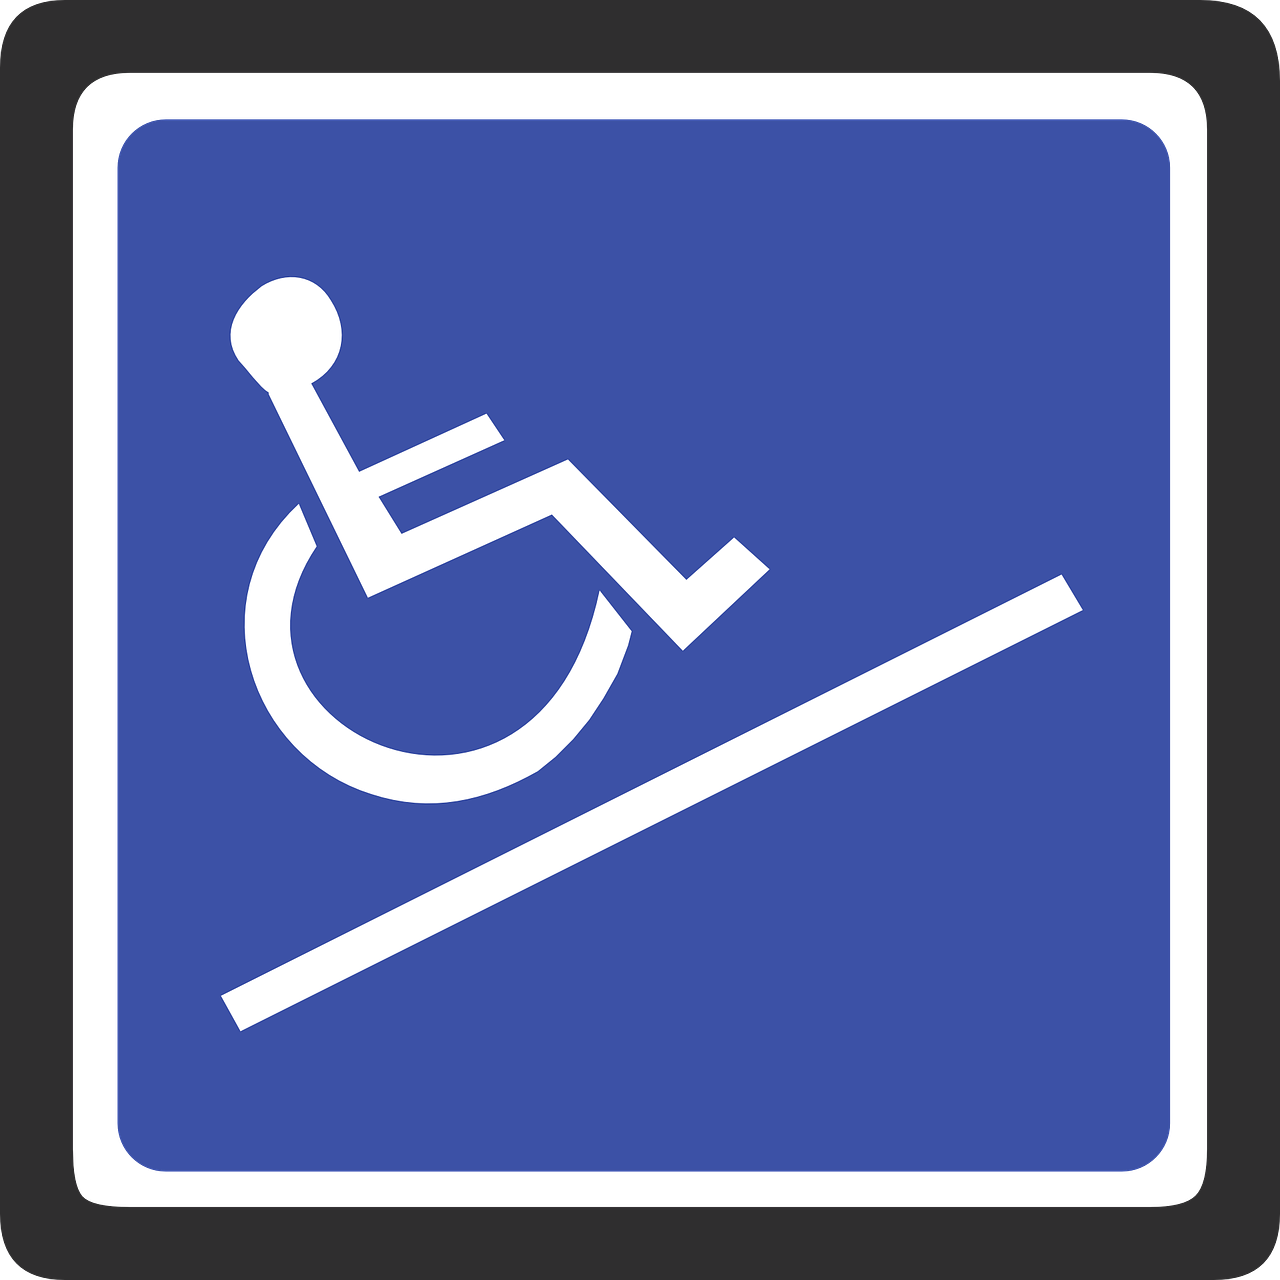 WELZO Welzijn & Zorg instellingen voor gehandicaptenzorg verstandelijk gehandicapten